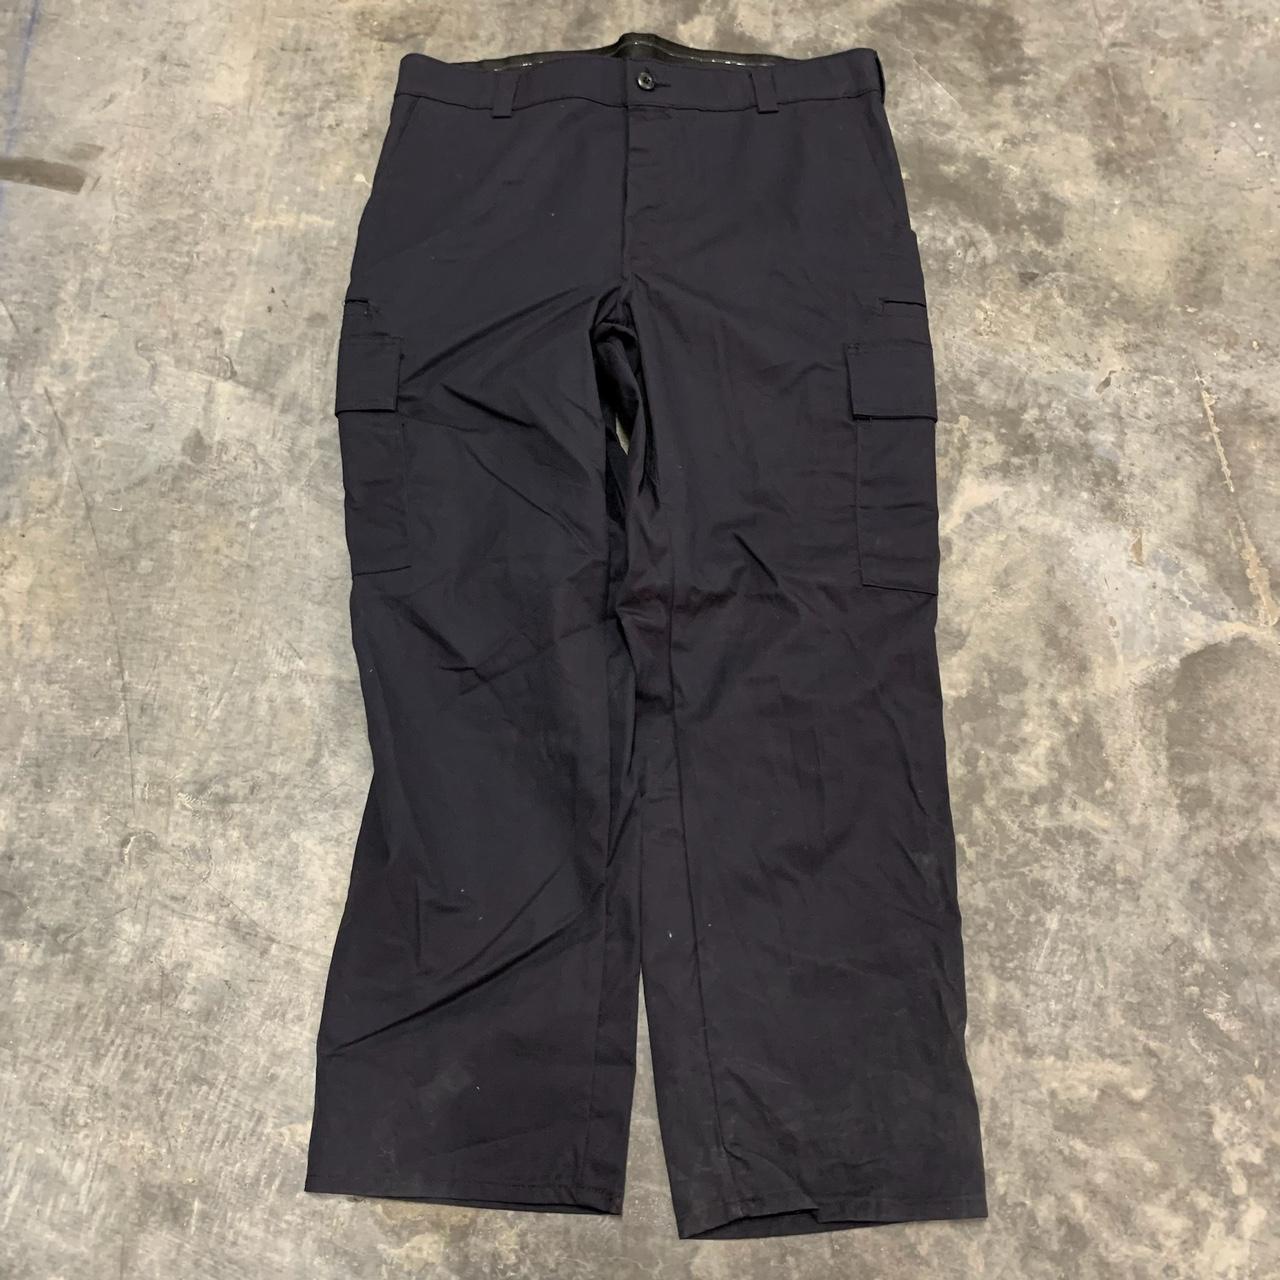 Vintage cargo black pants. signs of wear,... - Depop